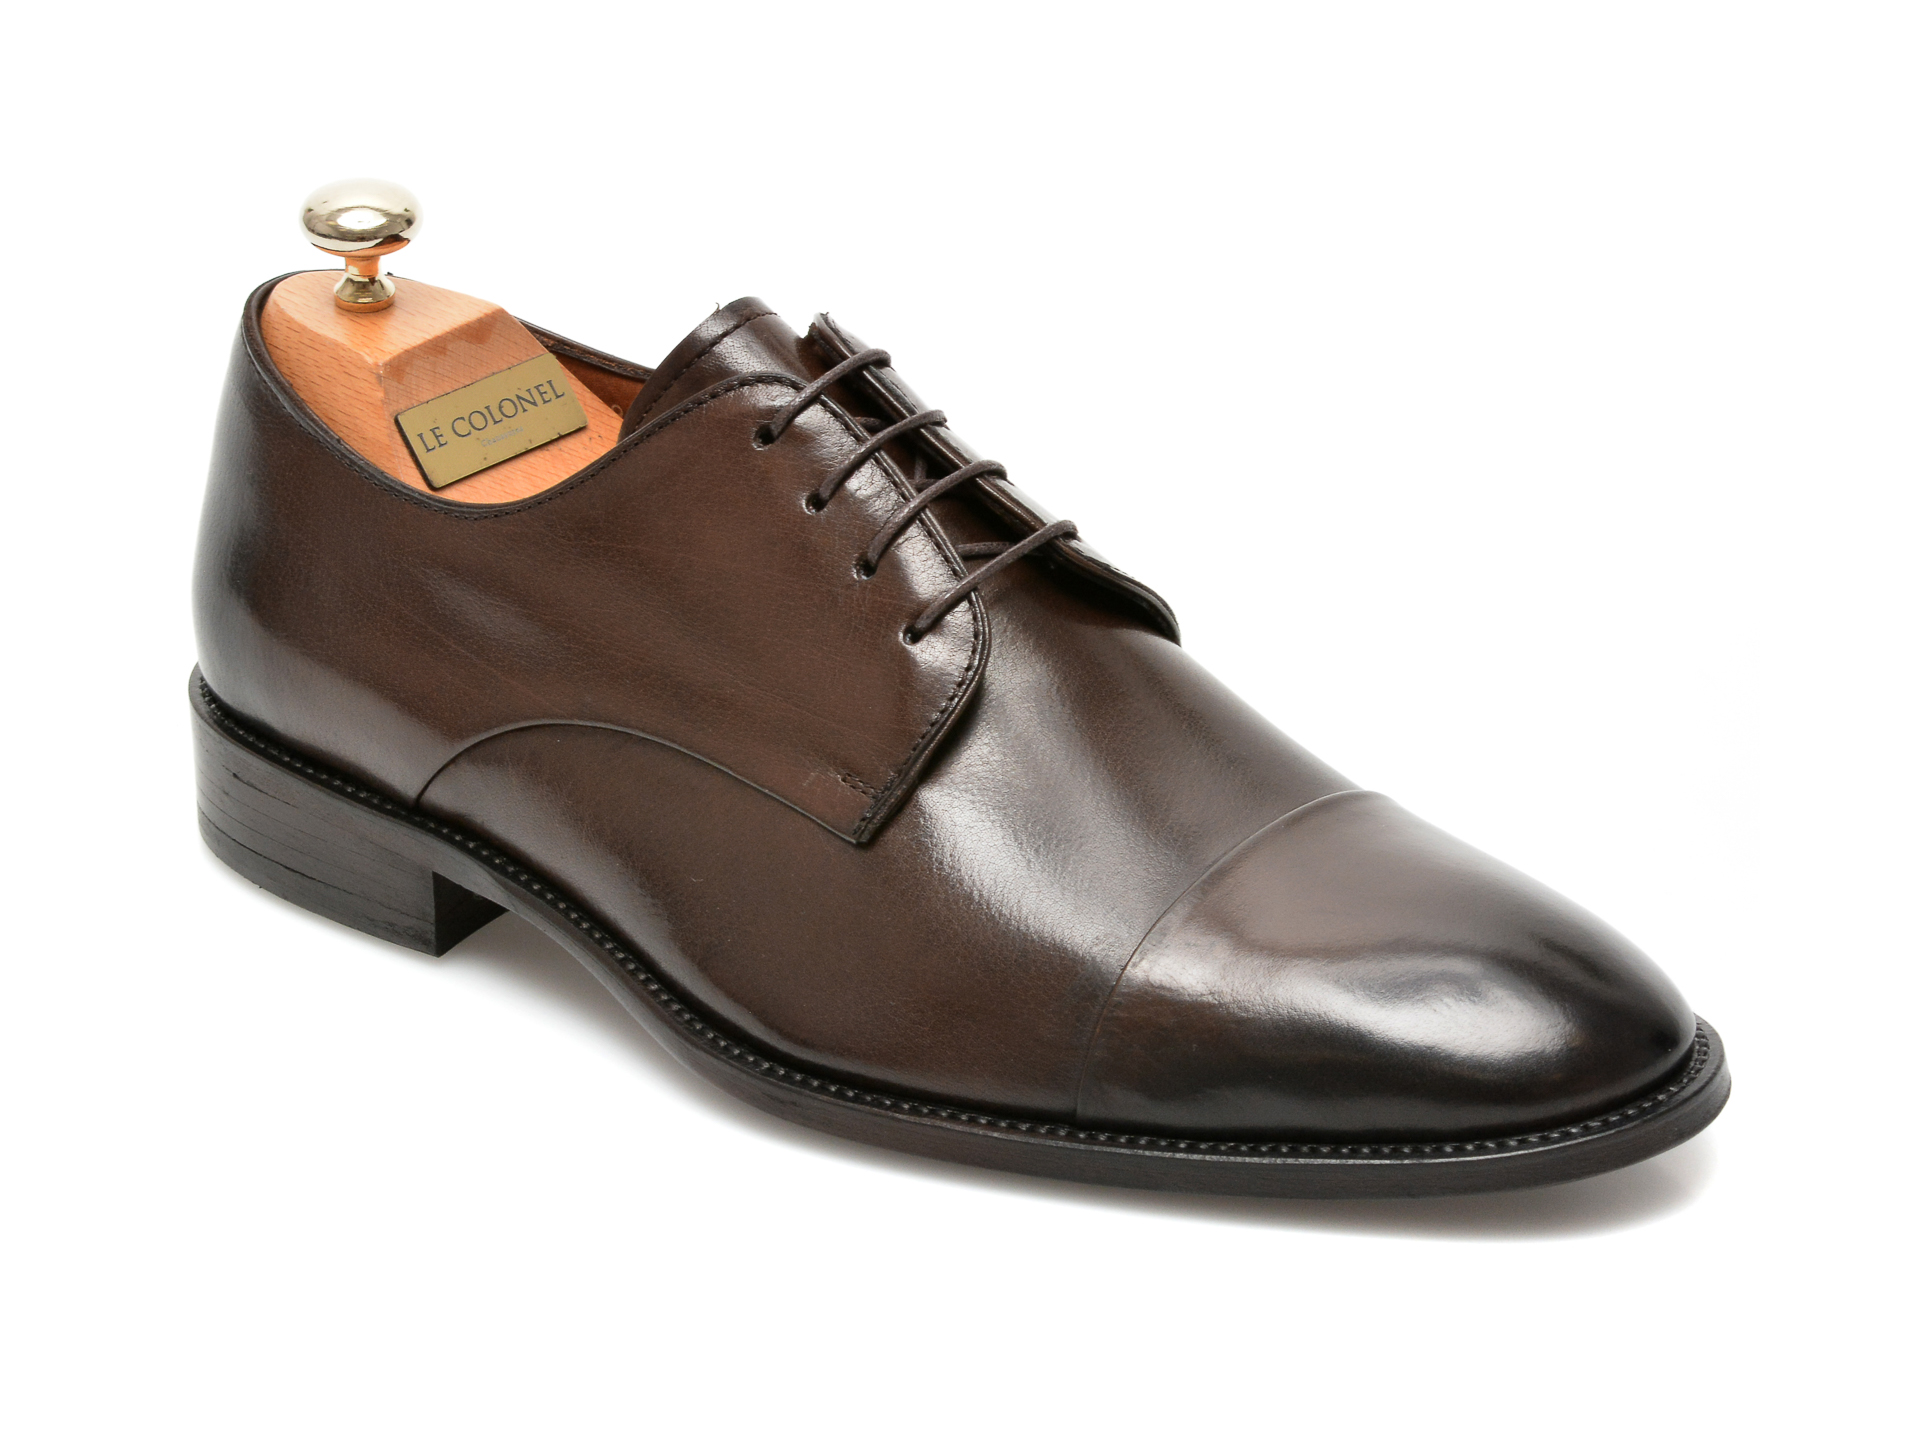 Pantofi LE COLONEL maro, 49809, din piele naturala Le Colonel imagine noua